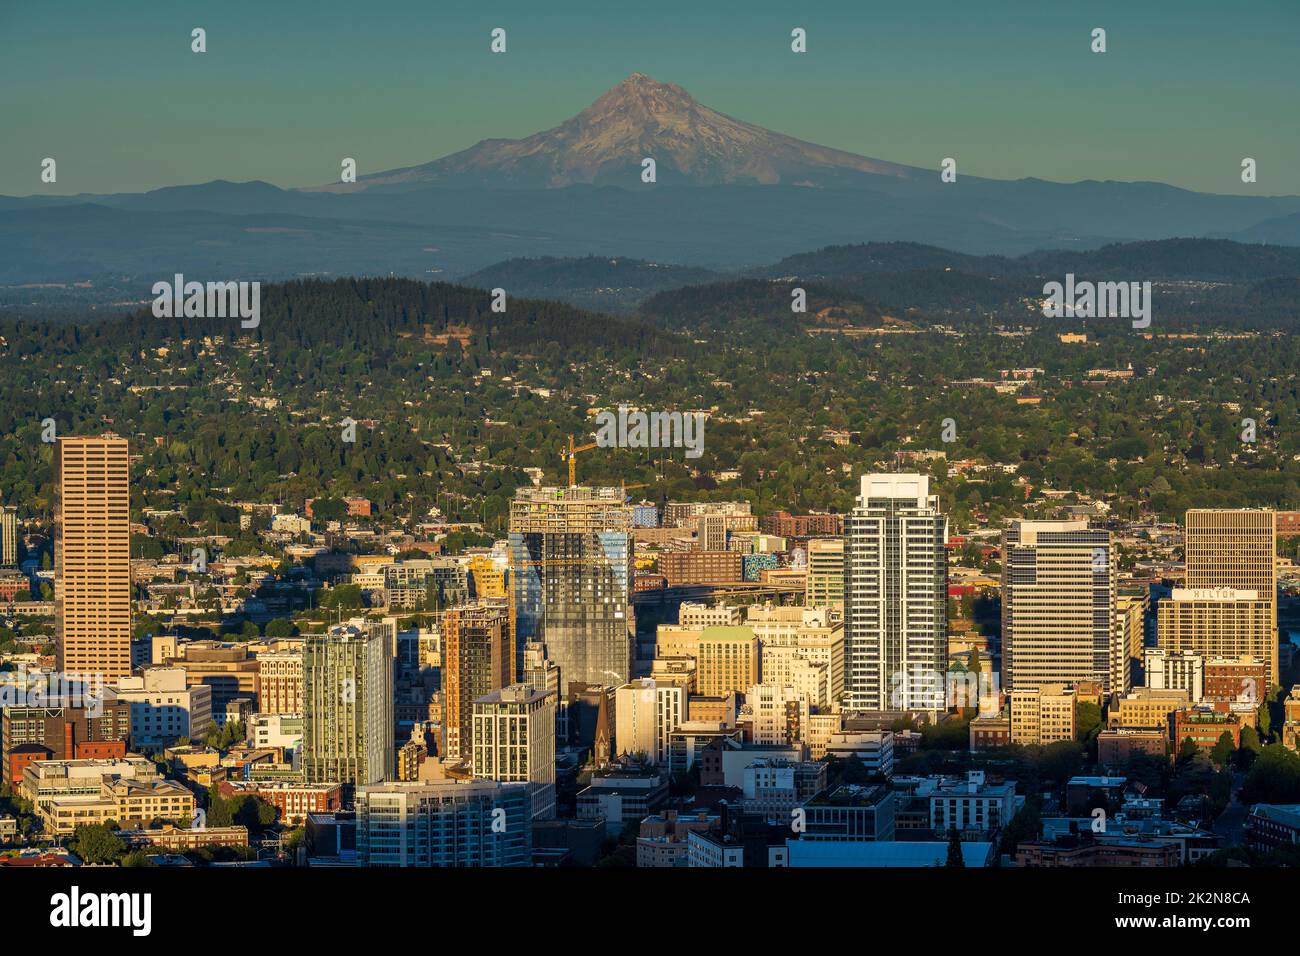 El horizonte del centro de la ciudad y Mt. Hood al atardecer, Portland, Oregón, EE.UU Foto de stock